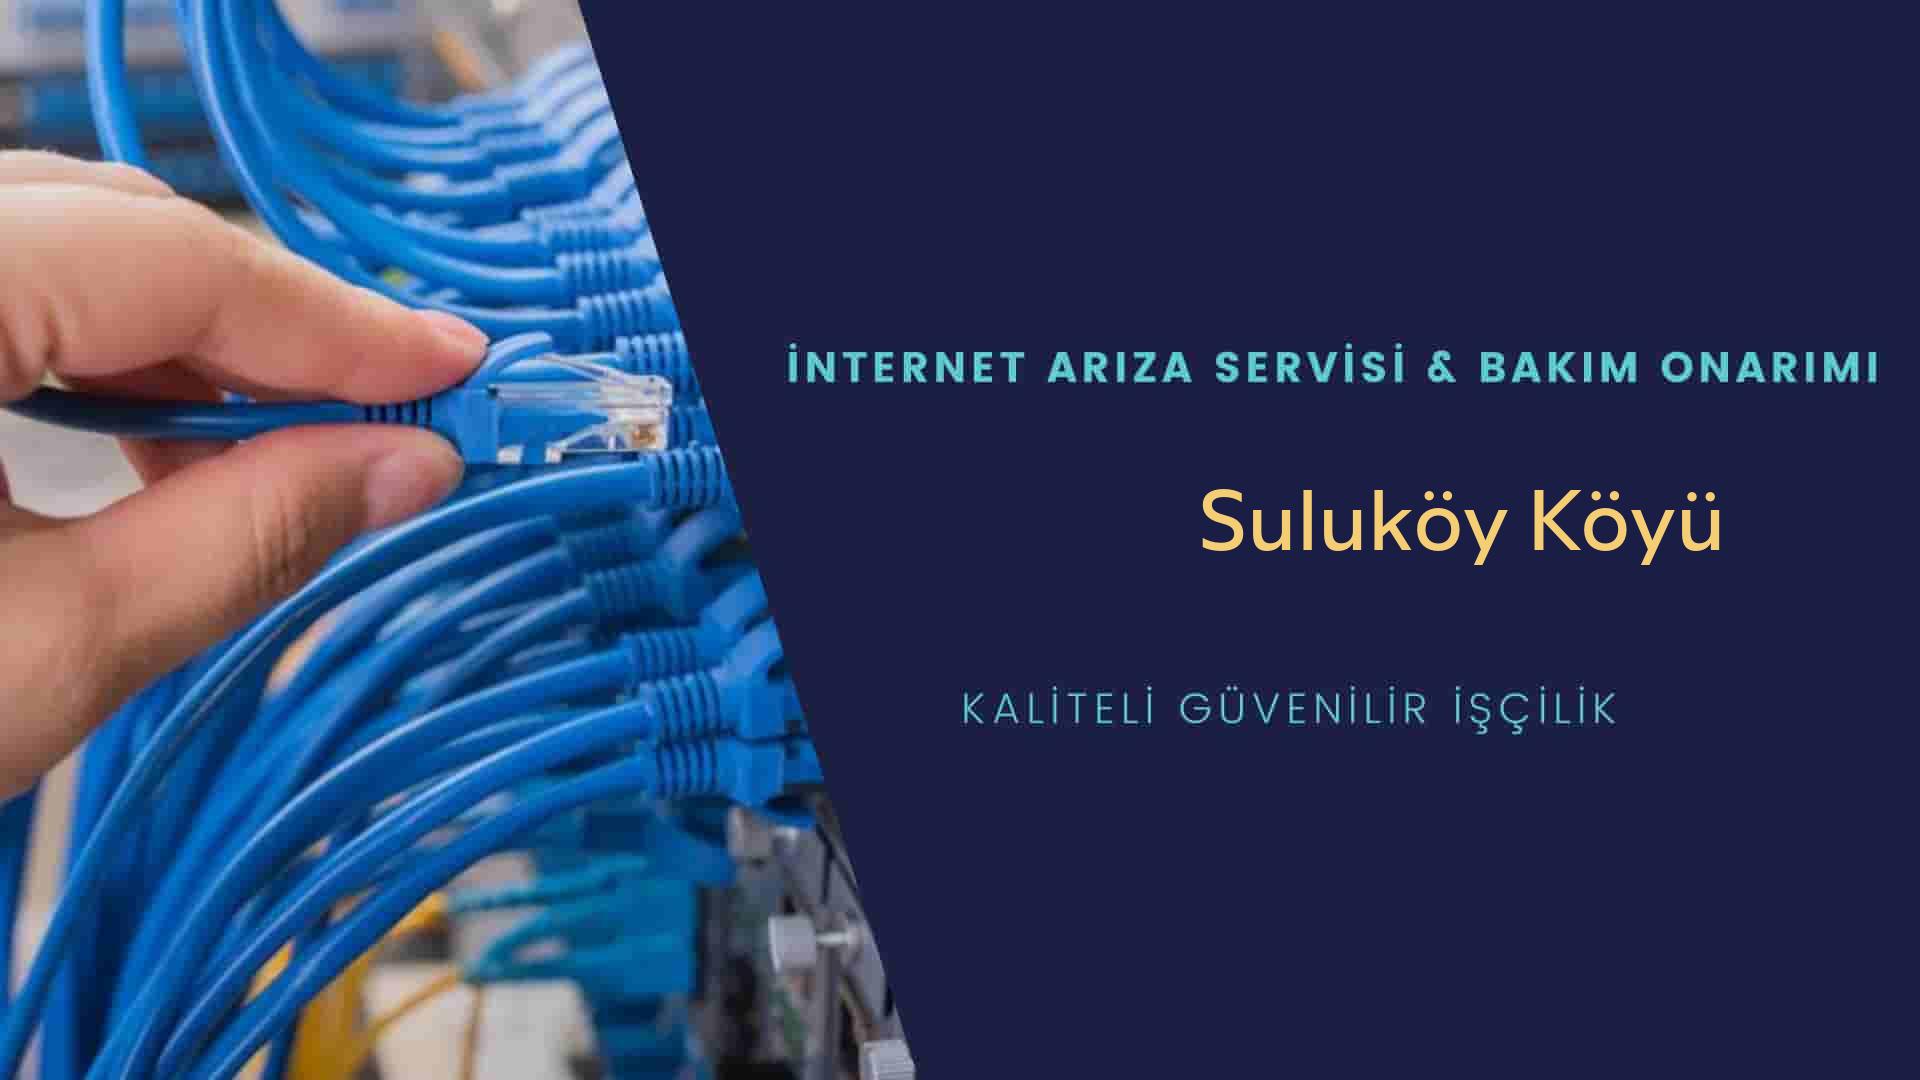 Suluköy Köyü internet kablosu çekimi yapan yerler veya elektrikçiler mi? arıyorsunuz doğru yerdesiniz o zaman sizlere 7/24 yardımcı olacak profesyonel ustalarımız bir telefon kadar yakındır size.